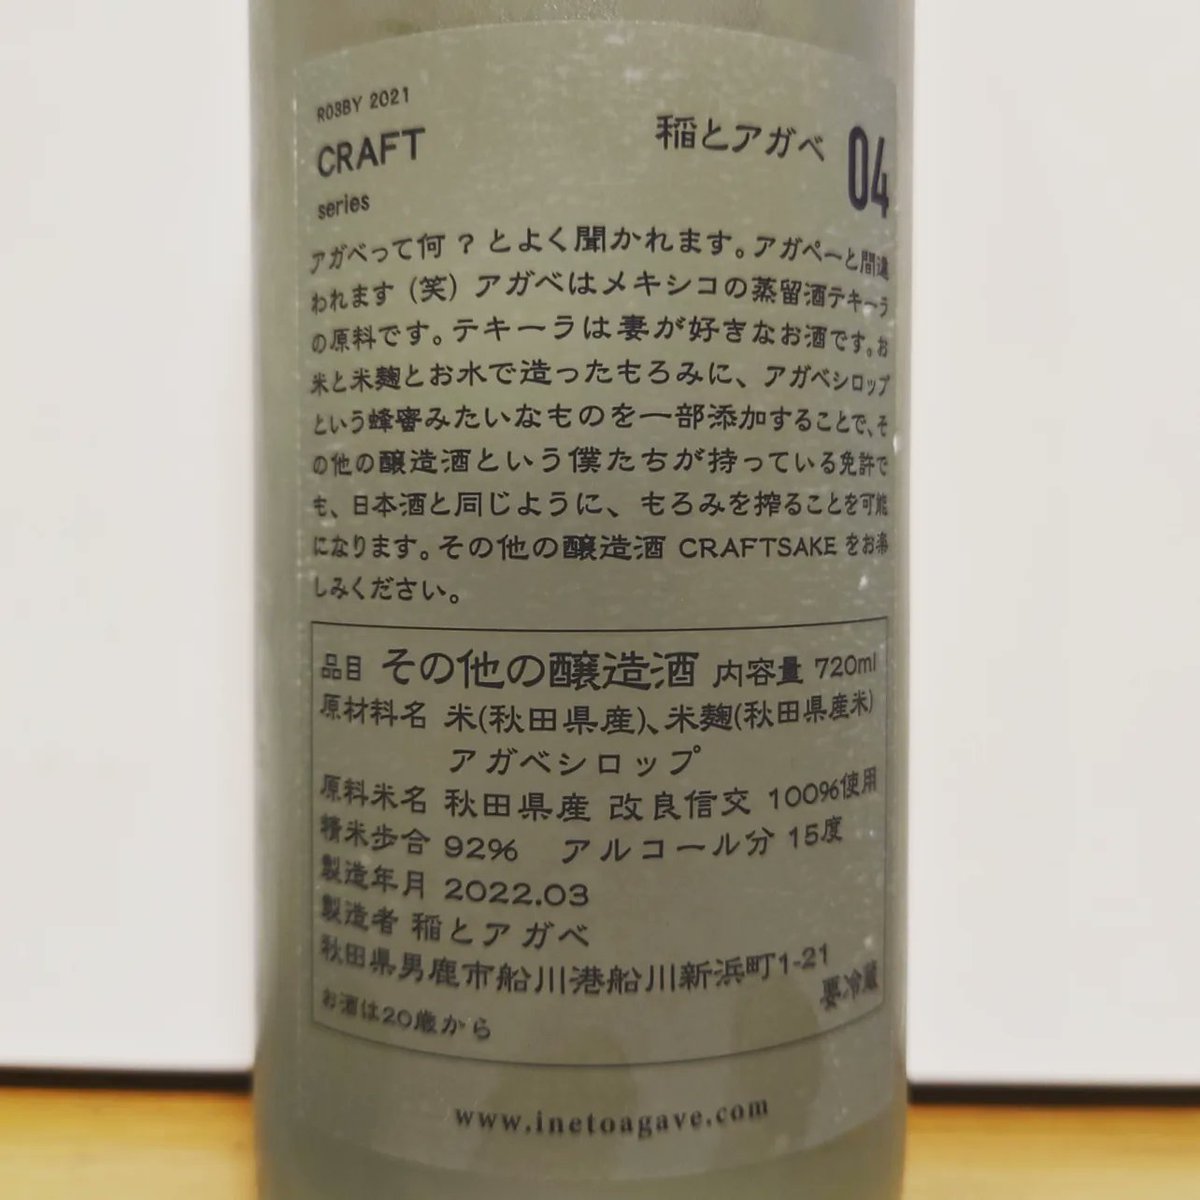 test ツイッターメディア - 今日の秋田の日本酒
稲とアガベ「CRAFT series 稲とアガベ」
新政酒造で勤めてた人が新しい酒蔵（旧男鹿駅舎にある）を作り、通常の酒造免許がないために「アガベシロップ」というテキーラの原料で作ったシロップを添加して作られたお酒
https://t.co/pvhGZIKsuh https://t.co/M7dlPcYyZB